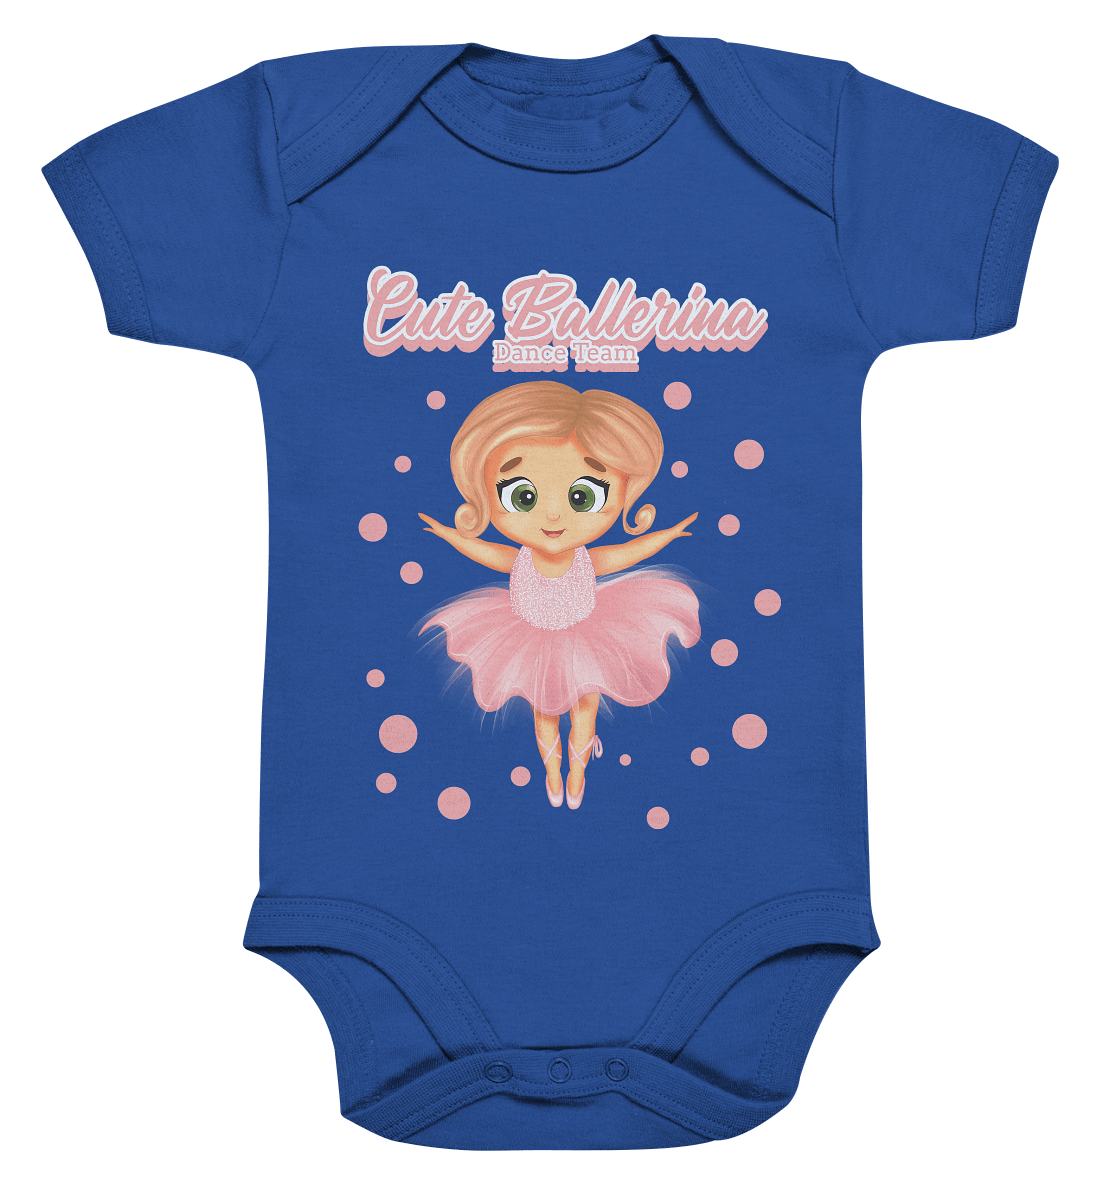 Baby Body in blau mit handgezeichneten Ballerina Cartoon.